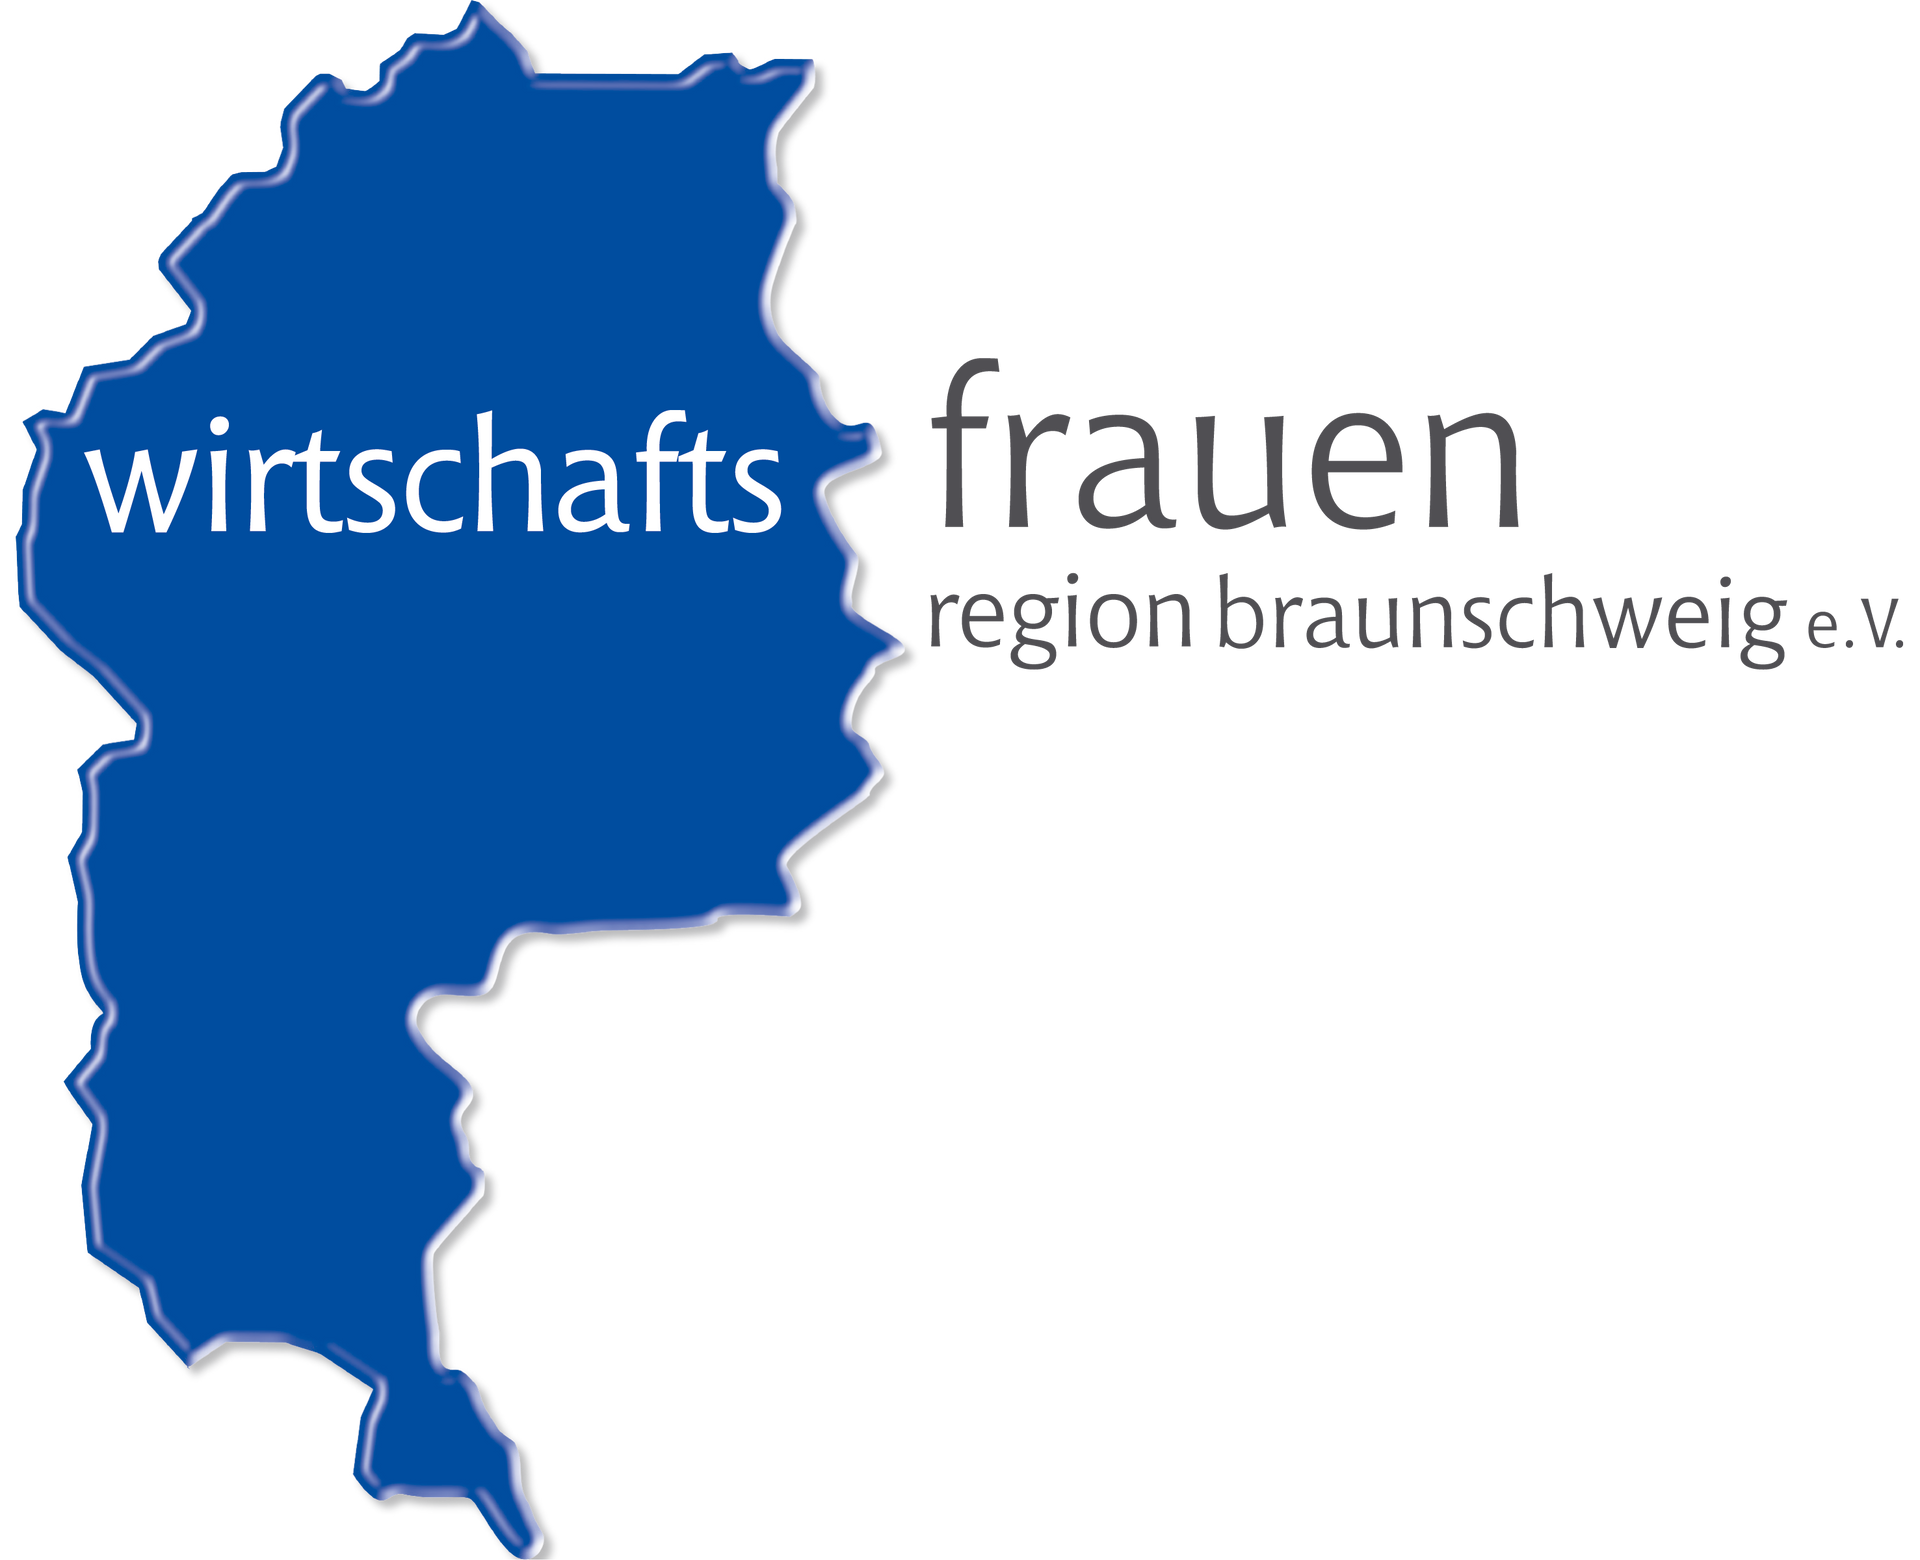 Bildmarke Wirtschaftsfrauen Region Braunschweig e.V.